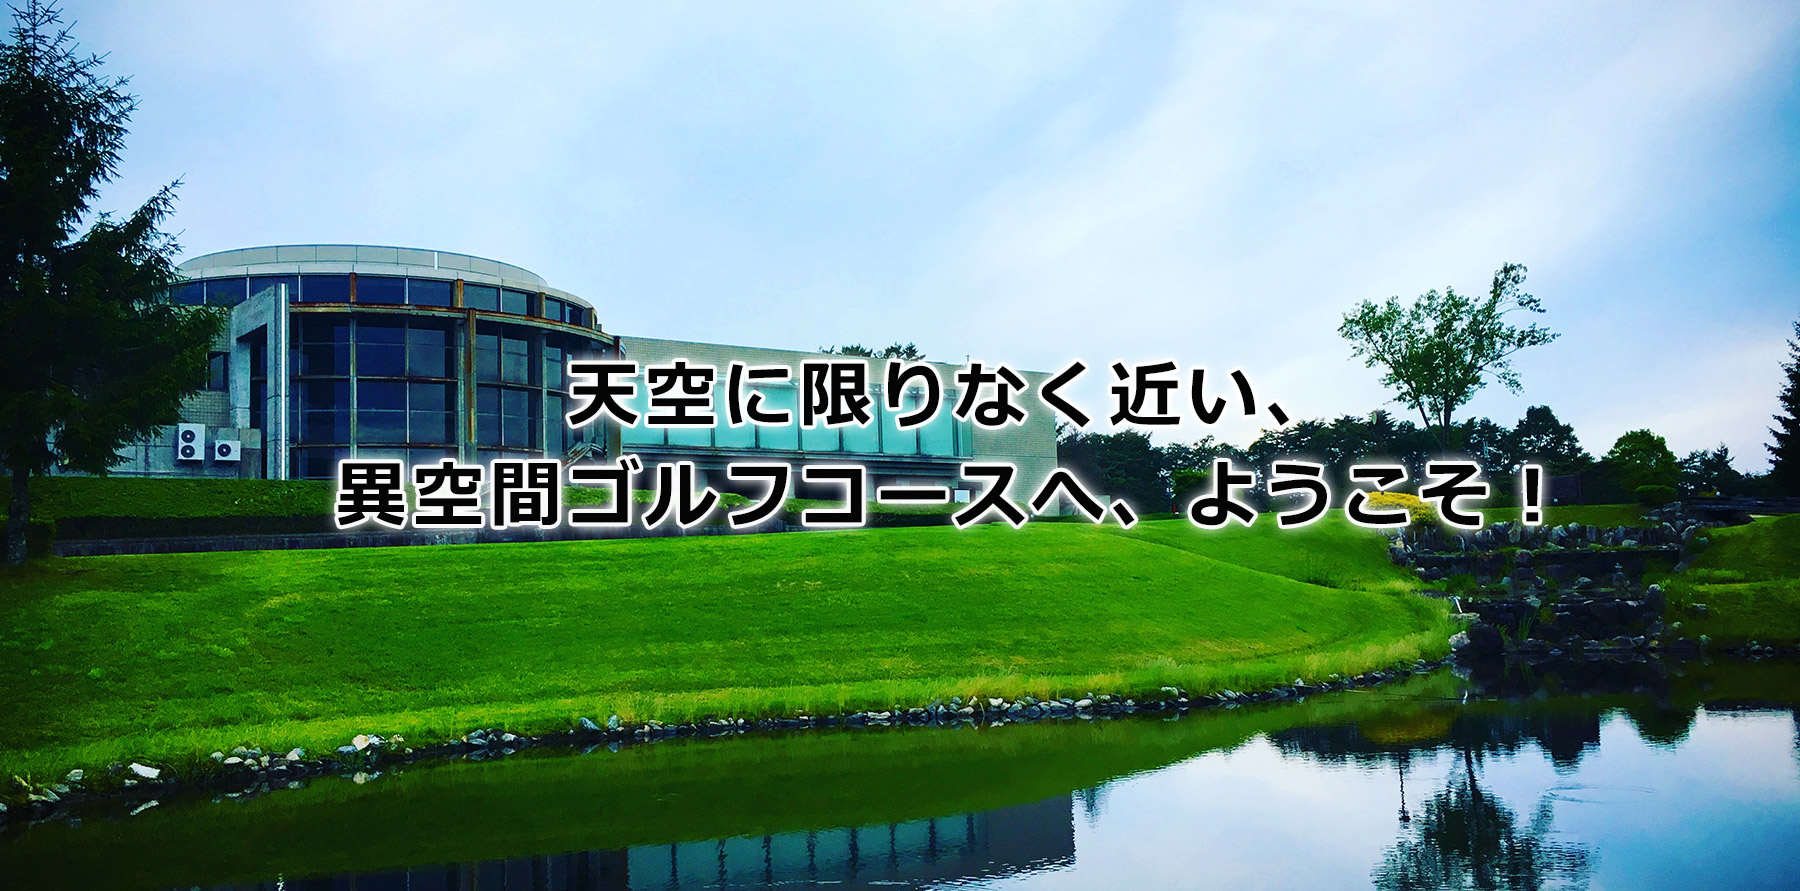 アドニスゴルフクラブ 公式ホームページ 岐阜県恵那市のゴルフ場